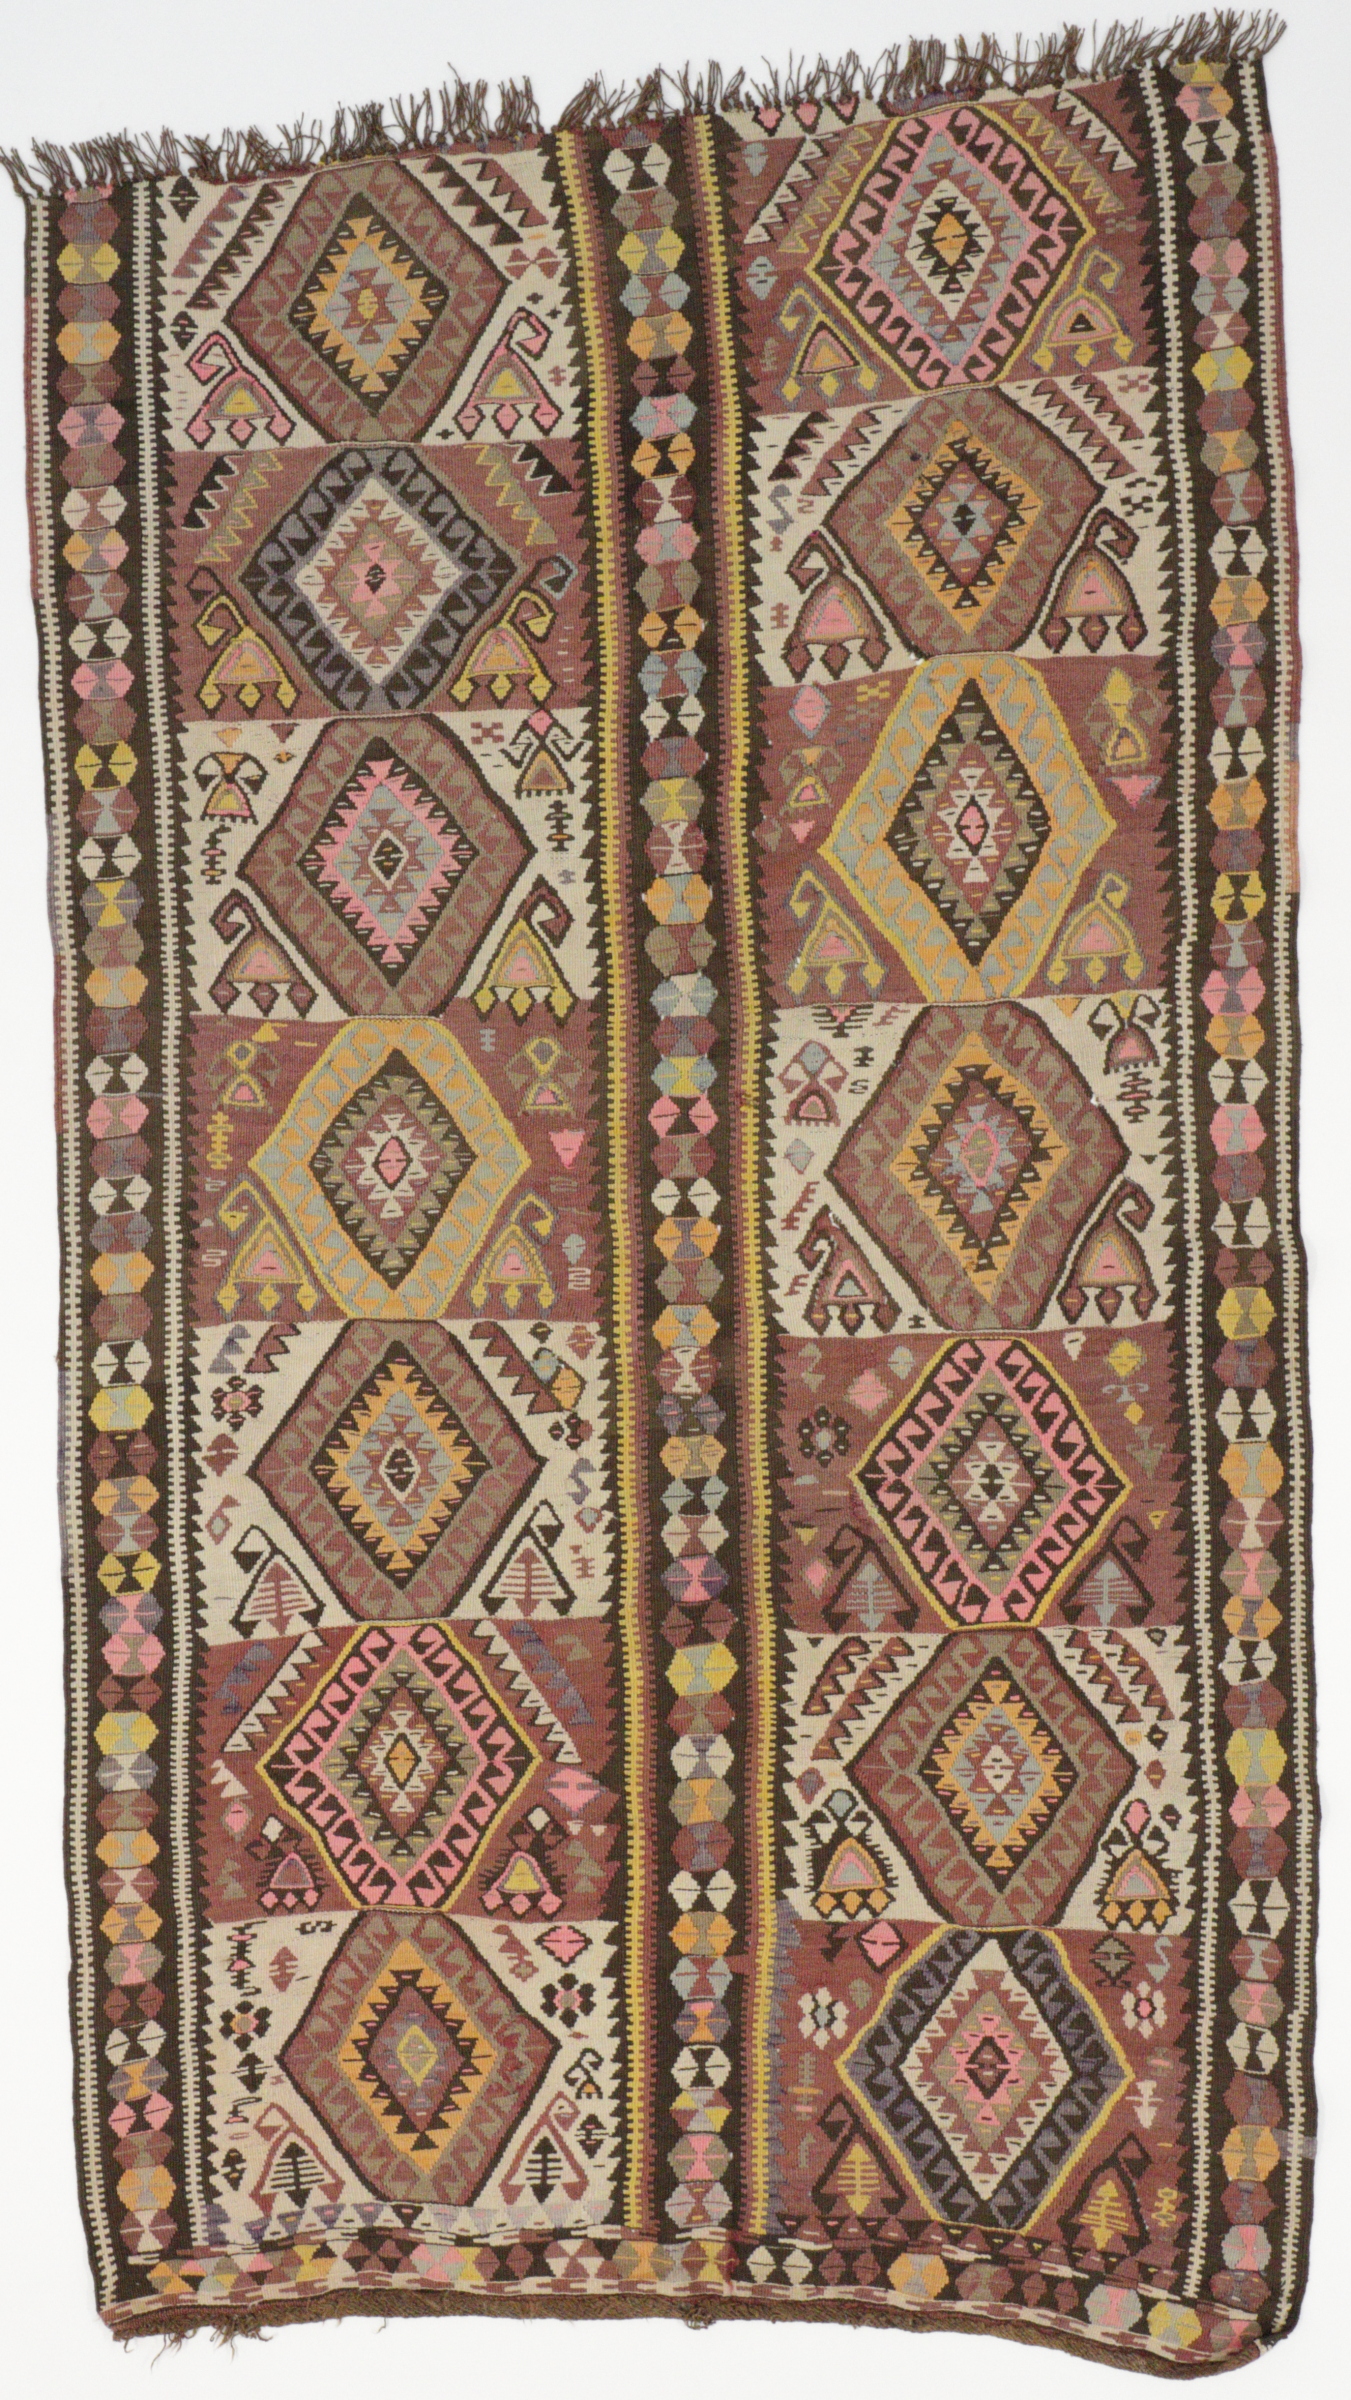 Türkischer Kelim, handgewebt aus Schurwolle, mit Pflanzenfarben gefärbt, über 60 Jahre alt, Draufsicht